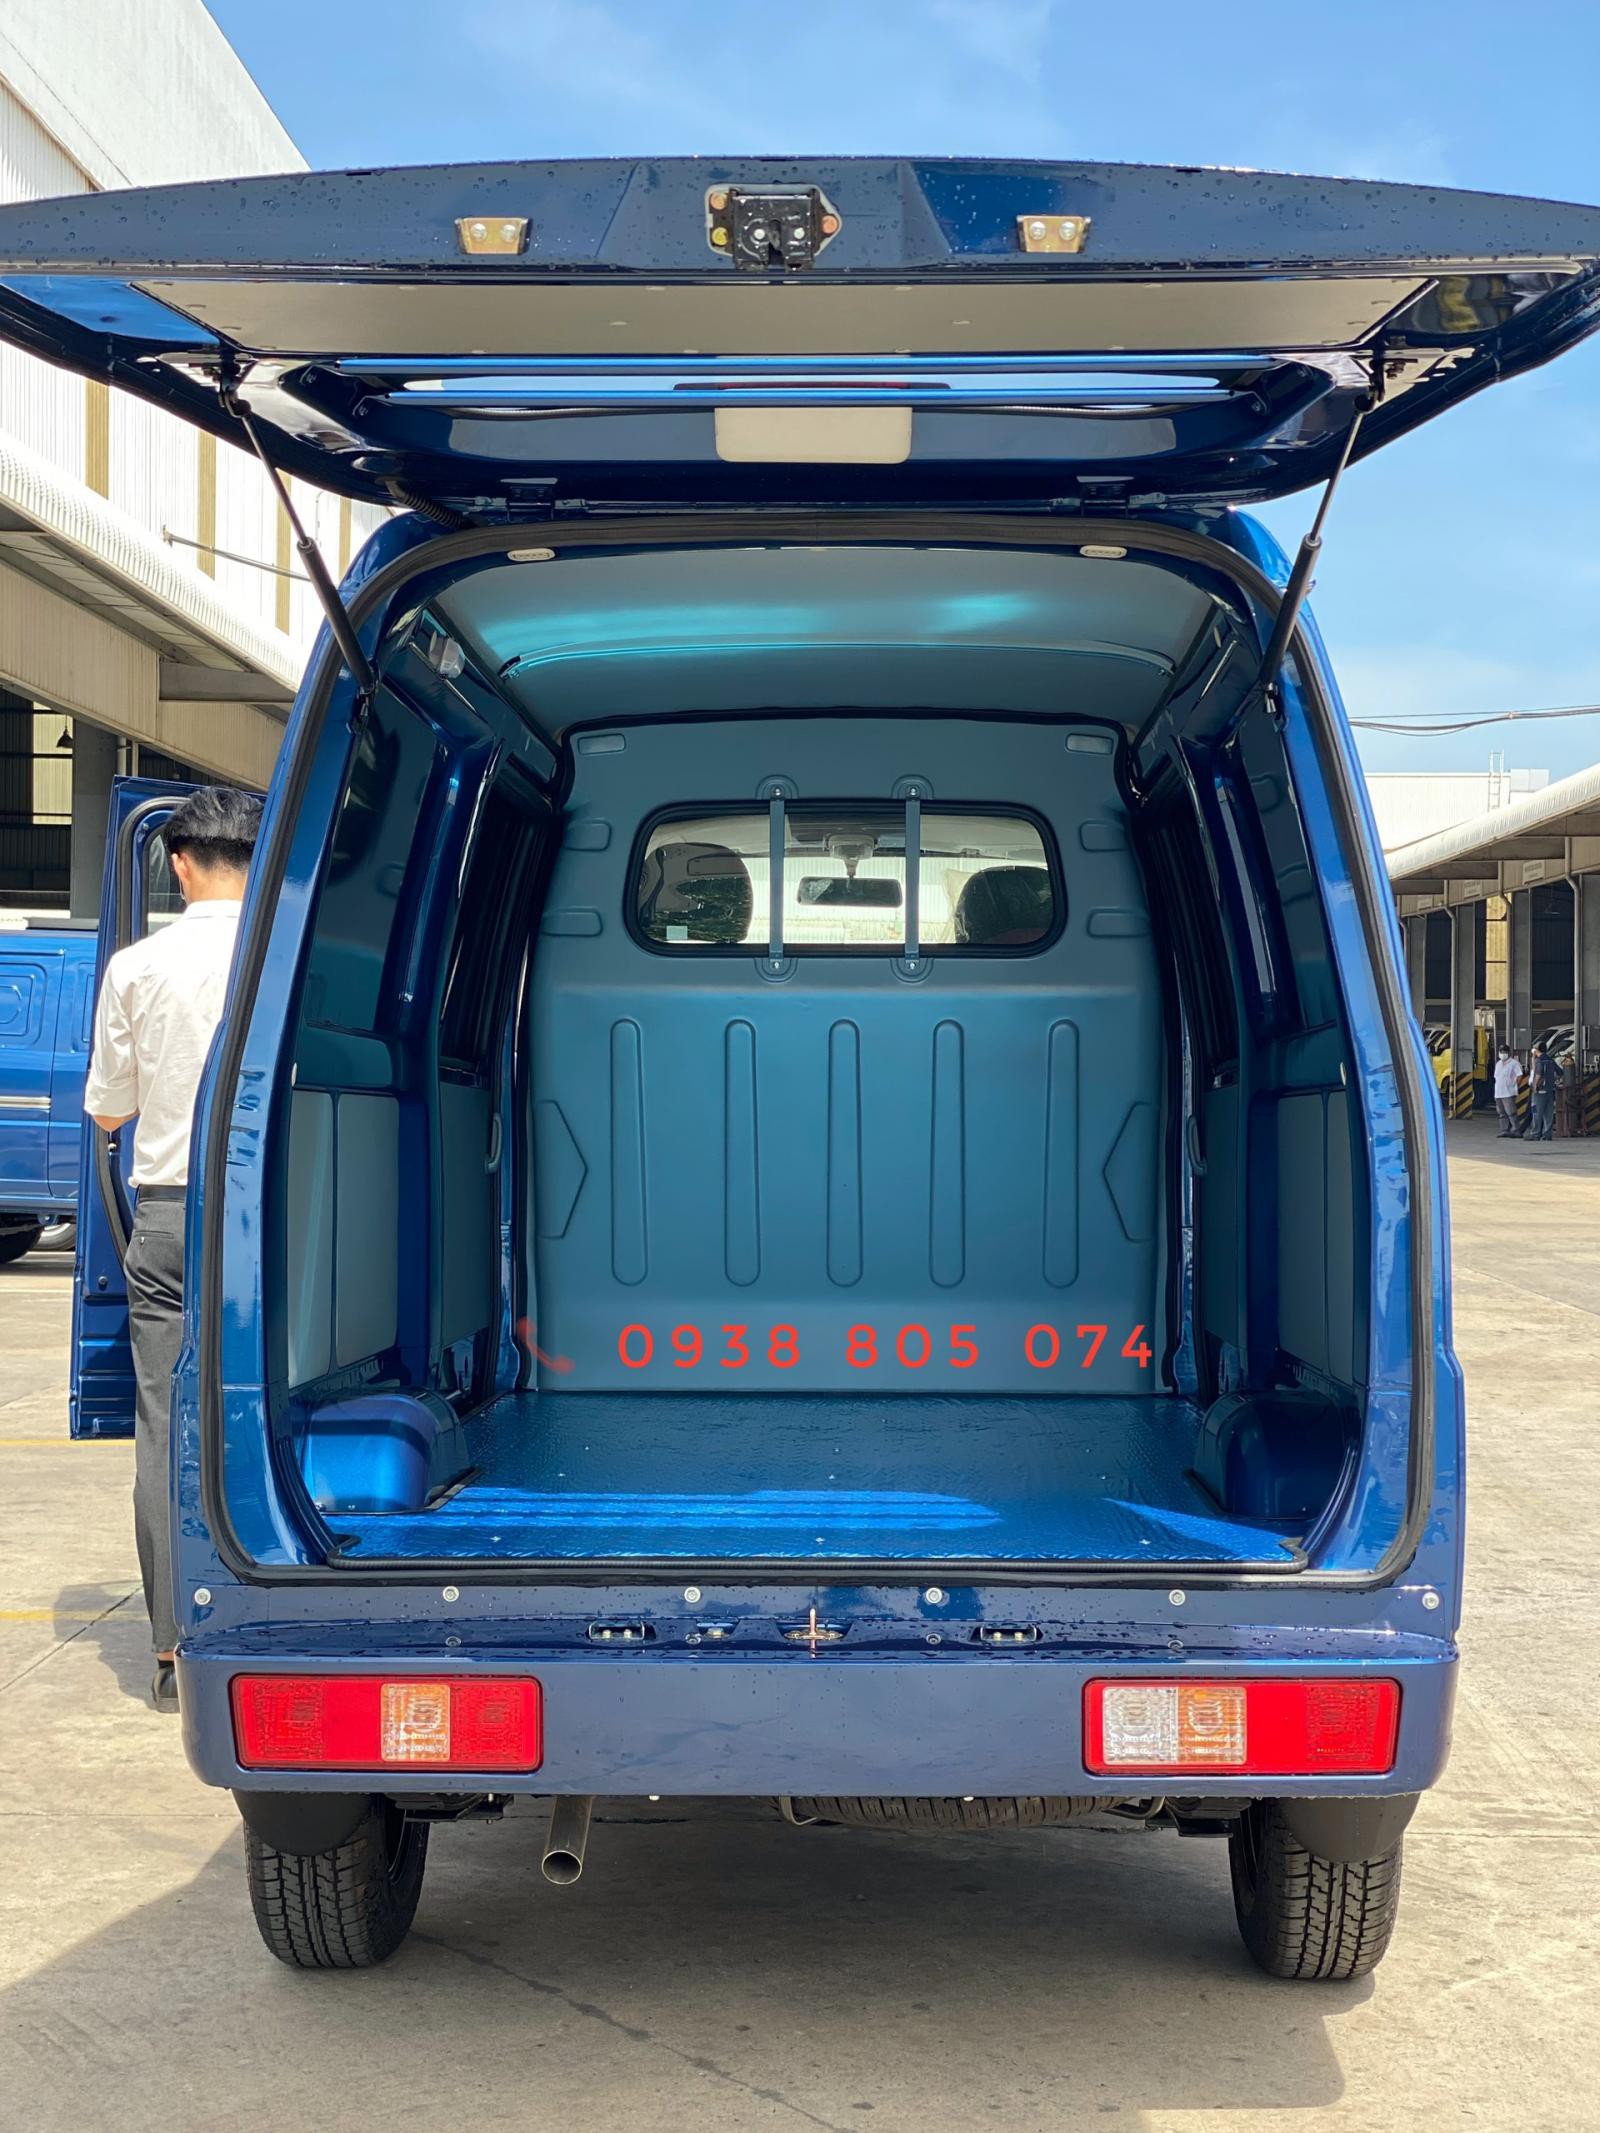 Xe tải van Thaco Towner Van2s - 2 chỗ - 945 kg - Vận chuyển 24/24